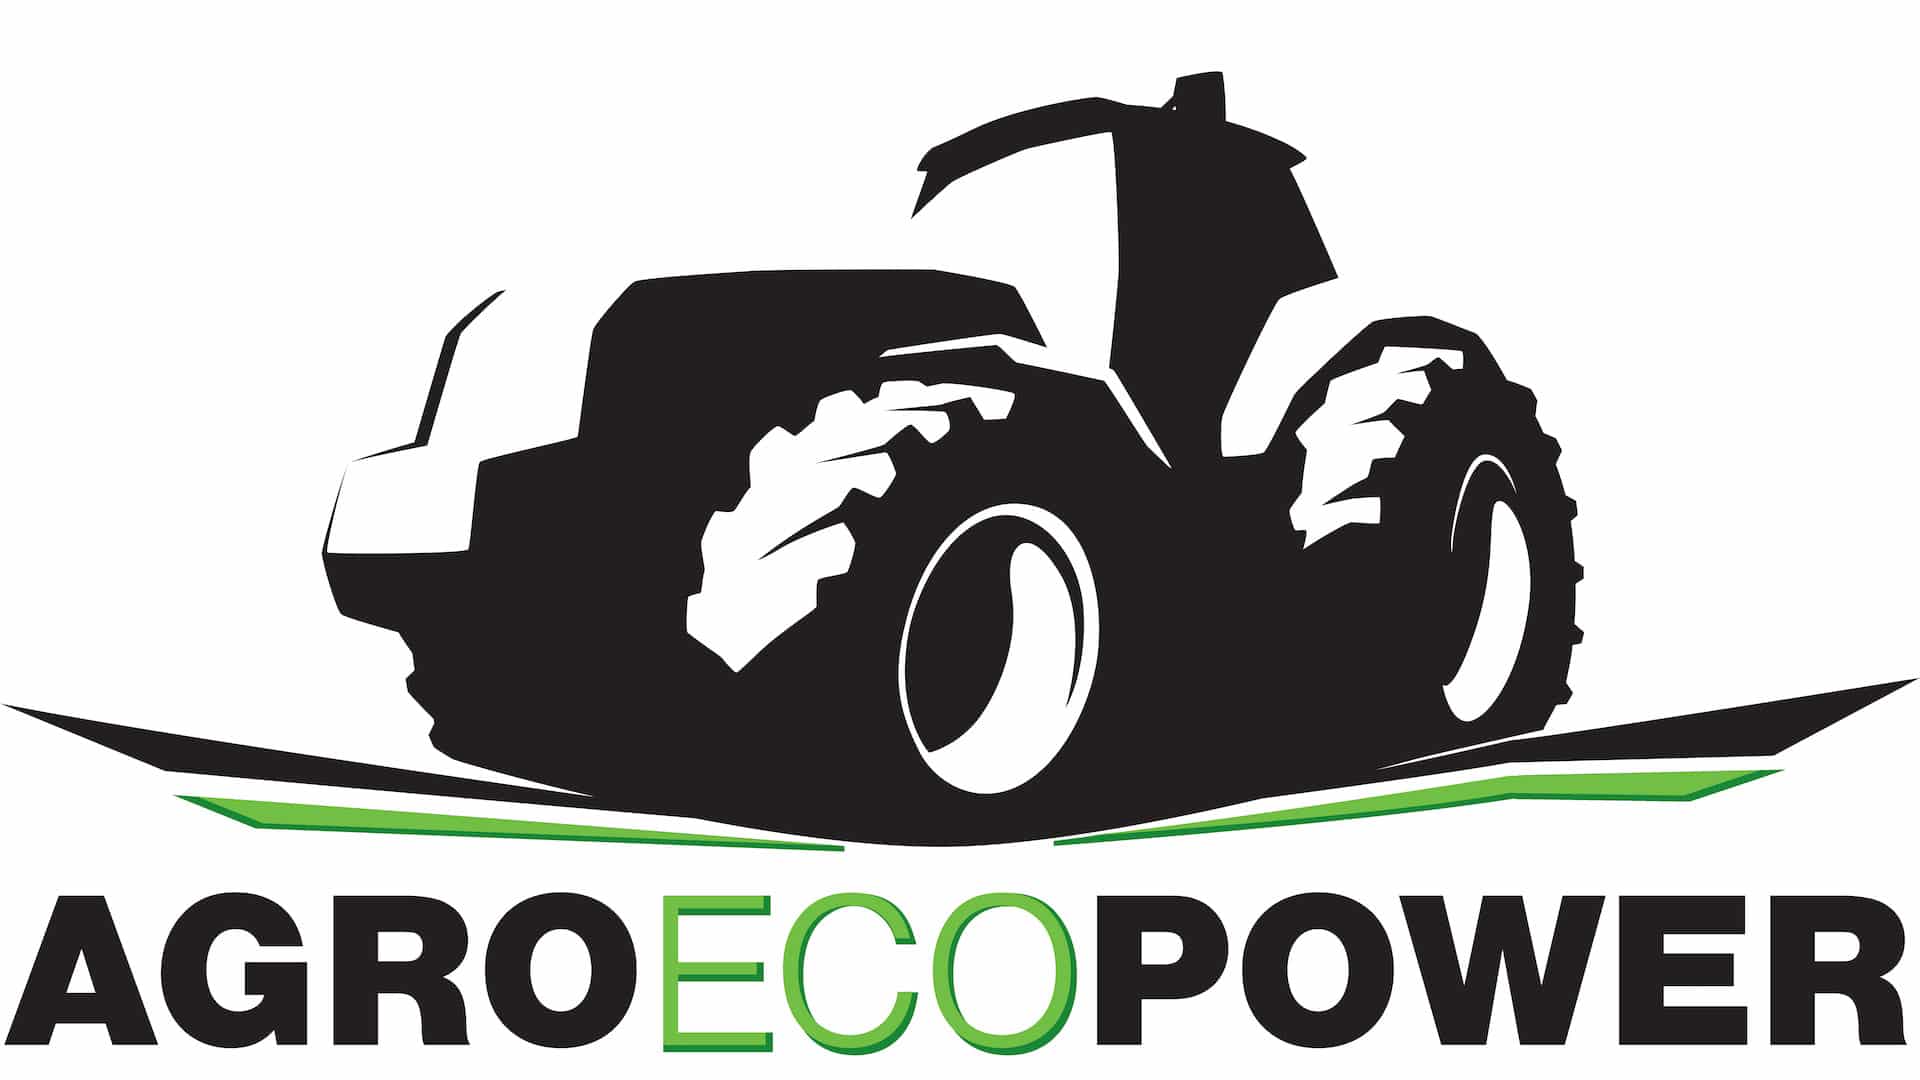 AgroEcopower